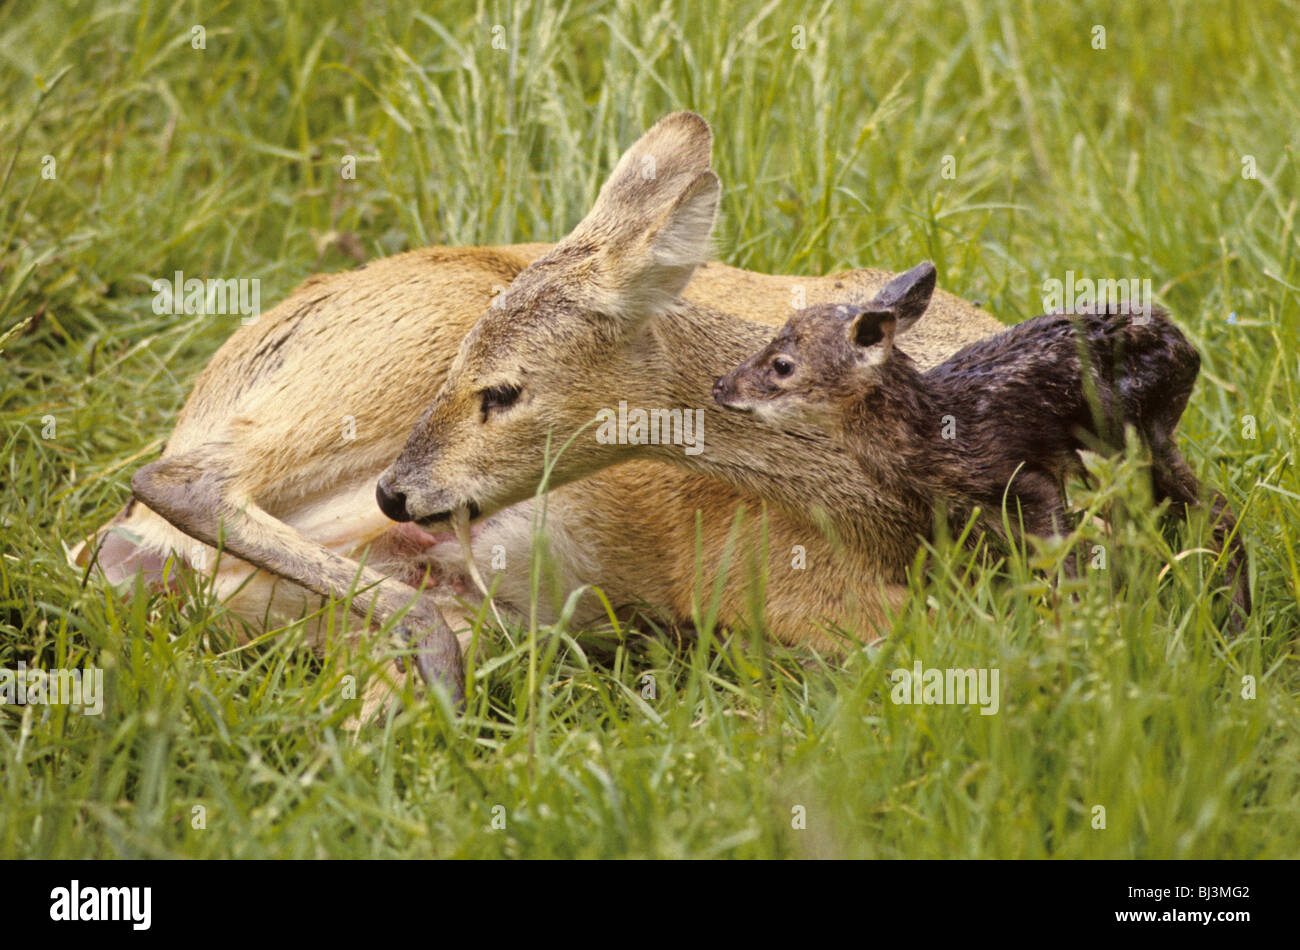 Acqua cinese Deer (Hydropotes inermis) femmina adulta, nutrirsi della placenta, con cerbiatti, England, Regno Unito, Europa Foto Stock